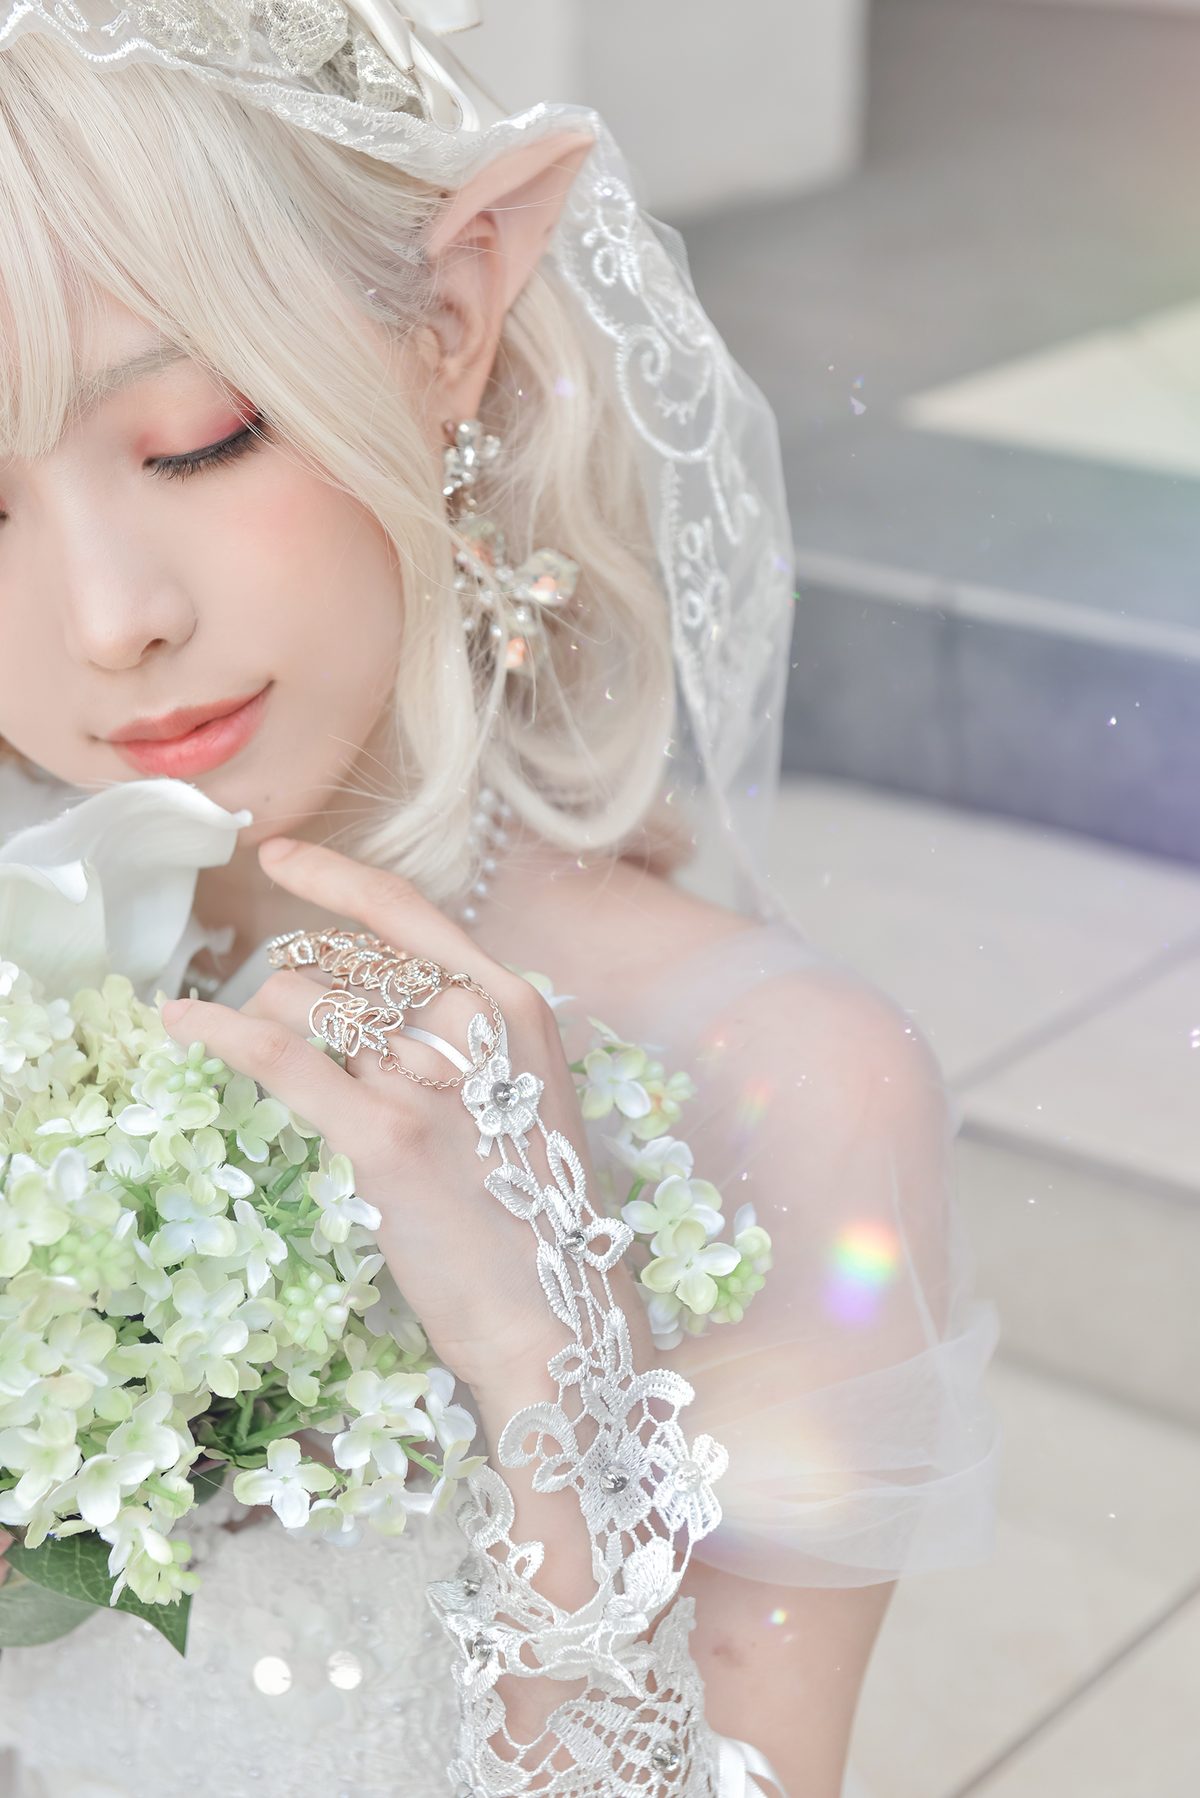 Coser@Ely_eee ElyEE子 Bride And Lingerie 0057 6484243403.jpg